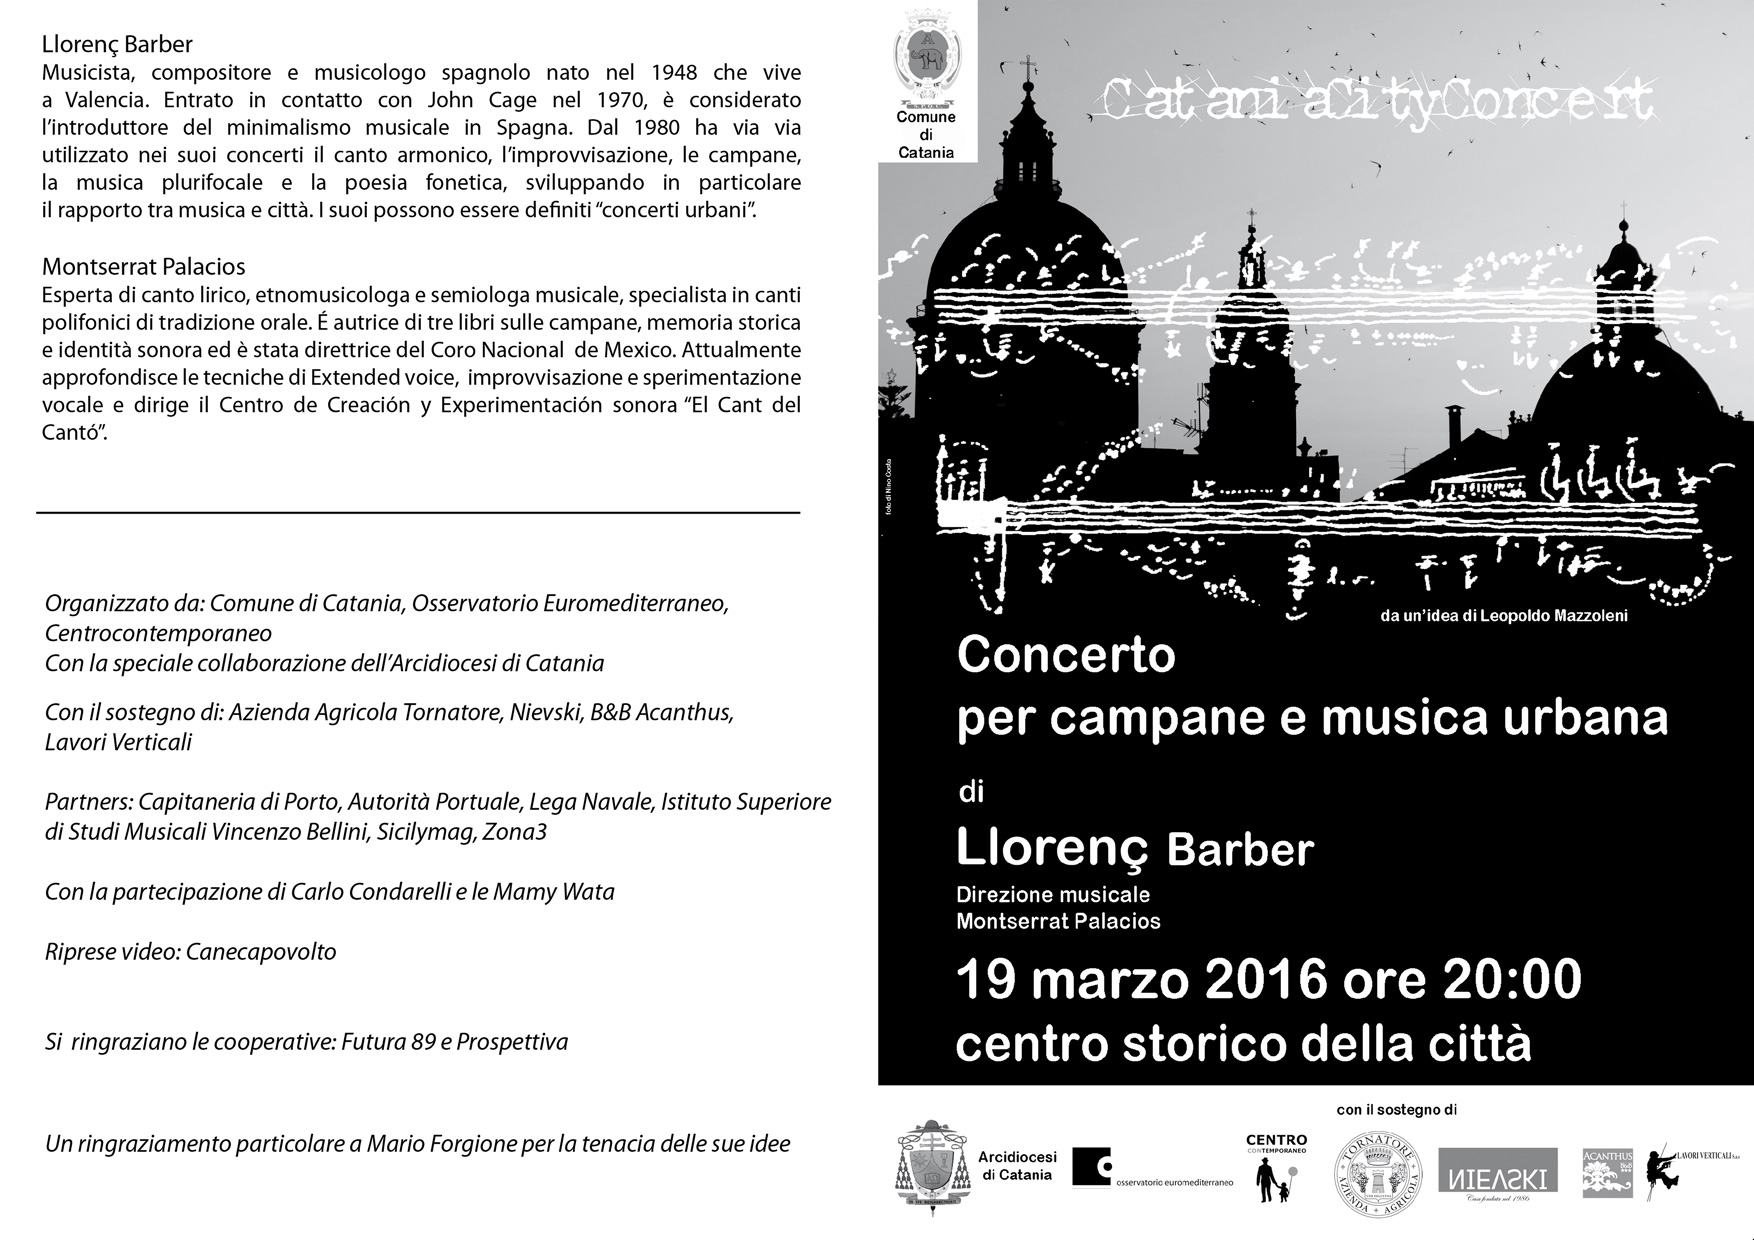 Catania City Concert